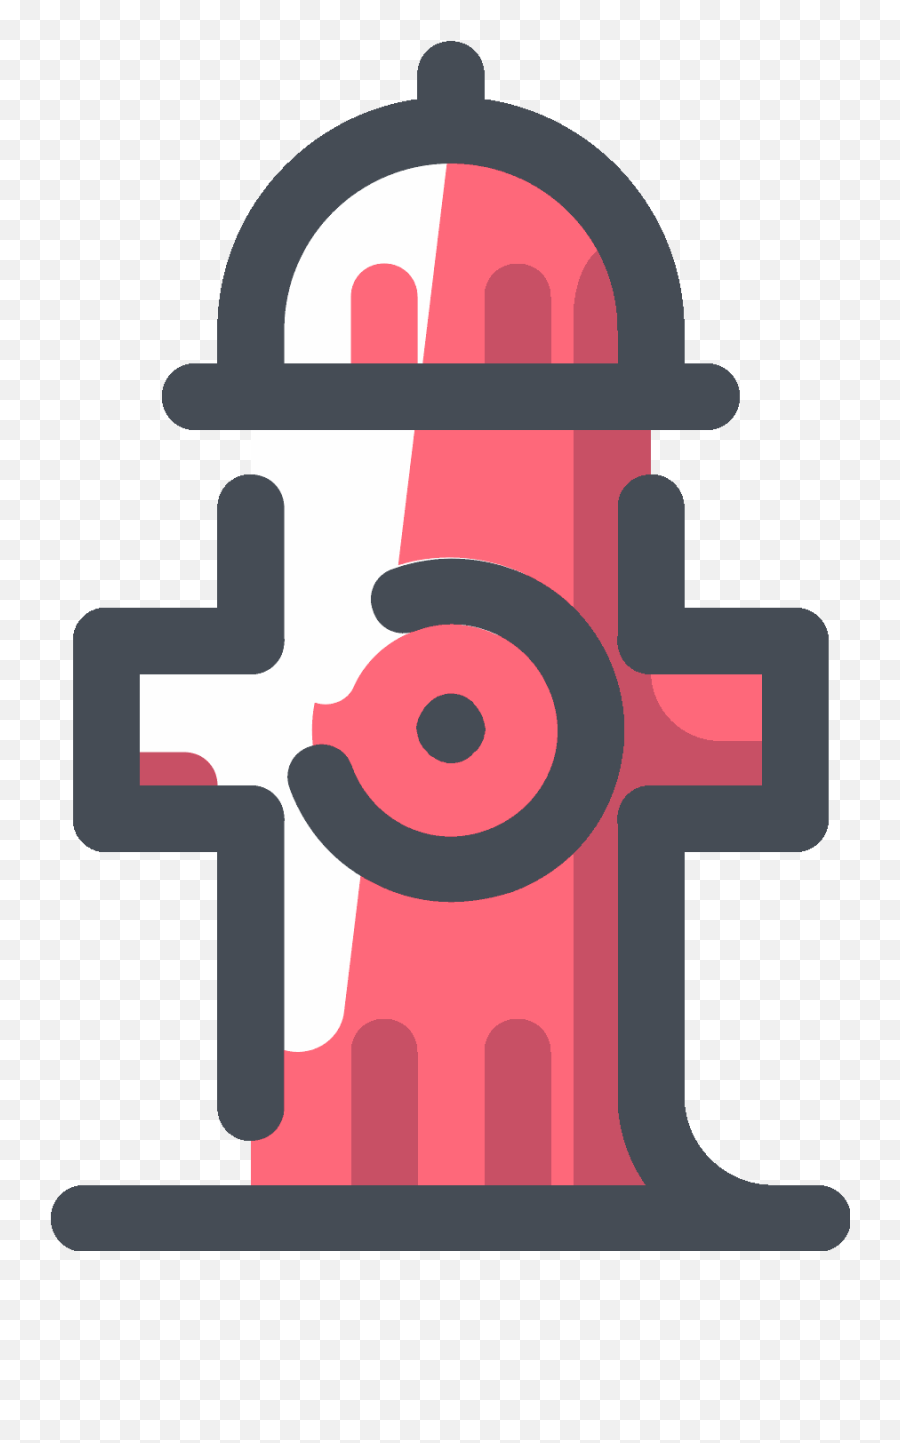 Firehydrant Hydrant - Fire Hydrant Emoji,Fire Hydrant Emoji